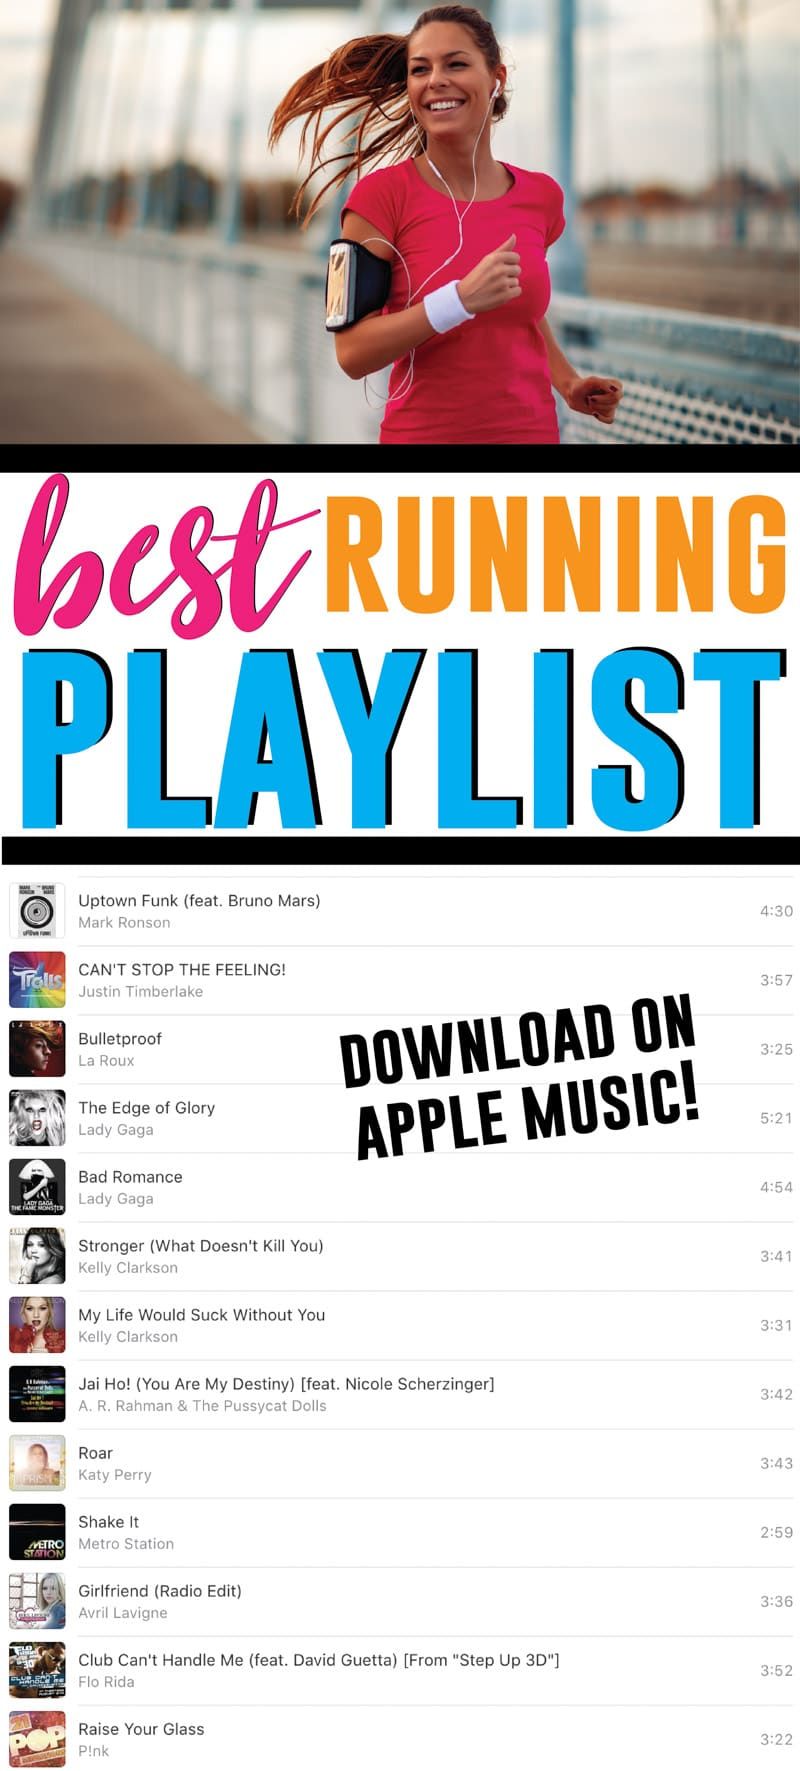 Najboljši optimističen seznam predvajanja! Polno vsega od države do rocka in najboljših hip hop in pop pesmi od 90-ih pa vse do leta 2019! Najboljše motivacijske pesmi, ob katerih boste želeli hitro teči! Pridobite seznam predvajanja Apple Music zdaj!